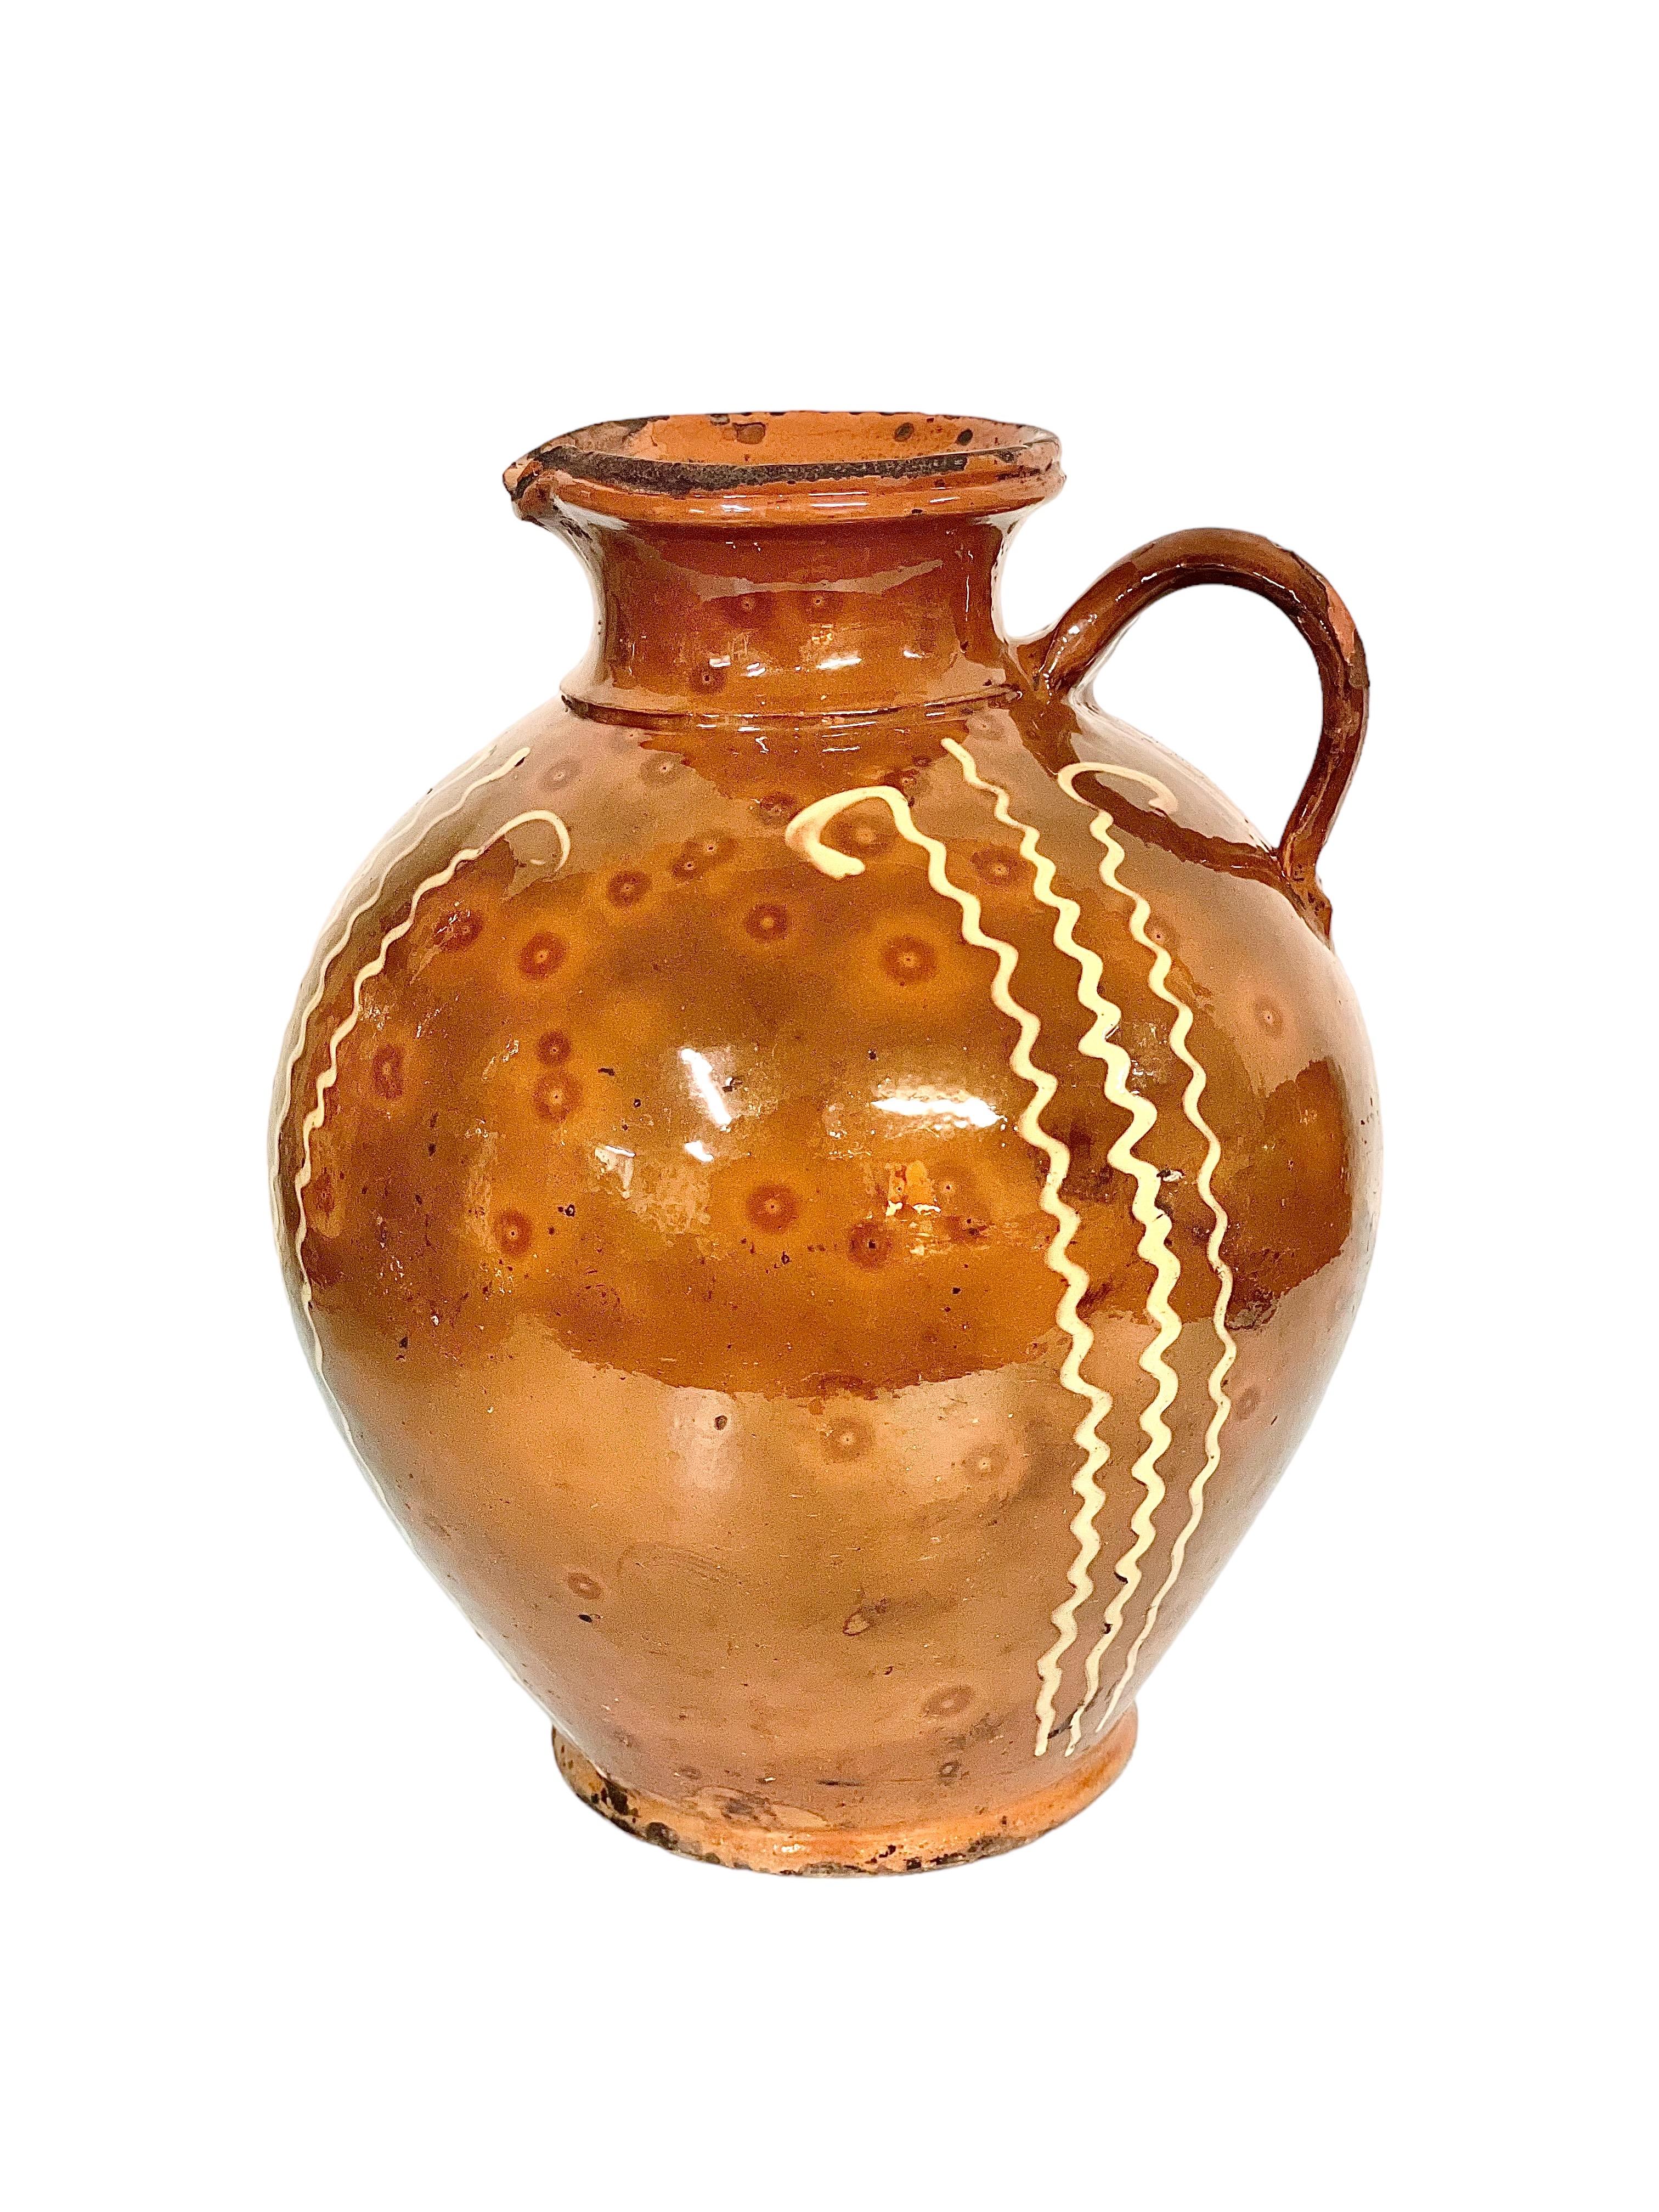 Une cruche rustique en poterie française avec poignée et bec verseur en forme du 19e siècle, en terre cuite émaillée avec un motif frappant peint à la main de zig-zags verticaux jaunes. À l'origine, cette cruche provençale était un ustensile de